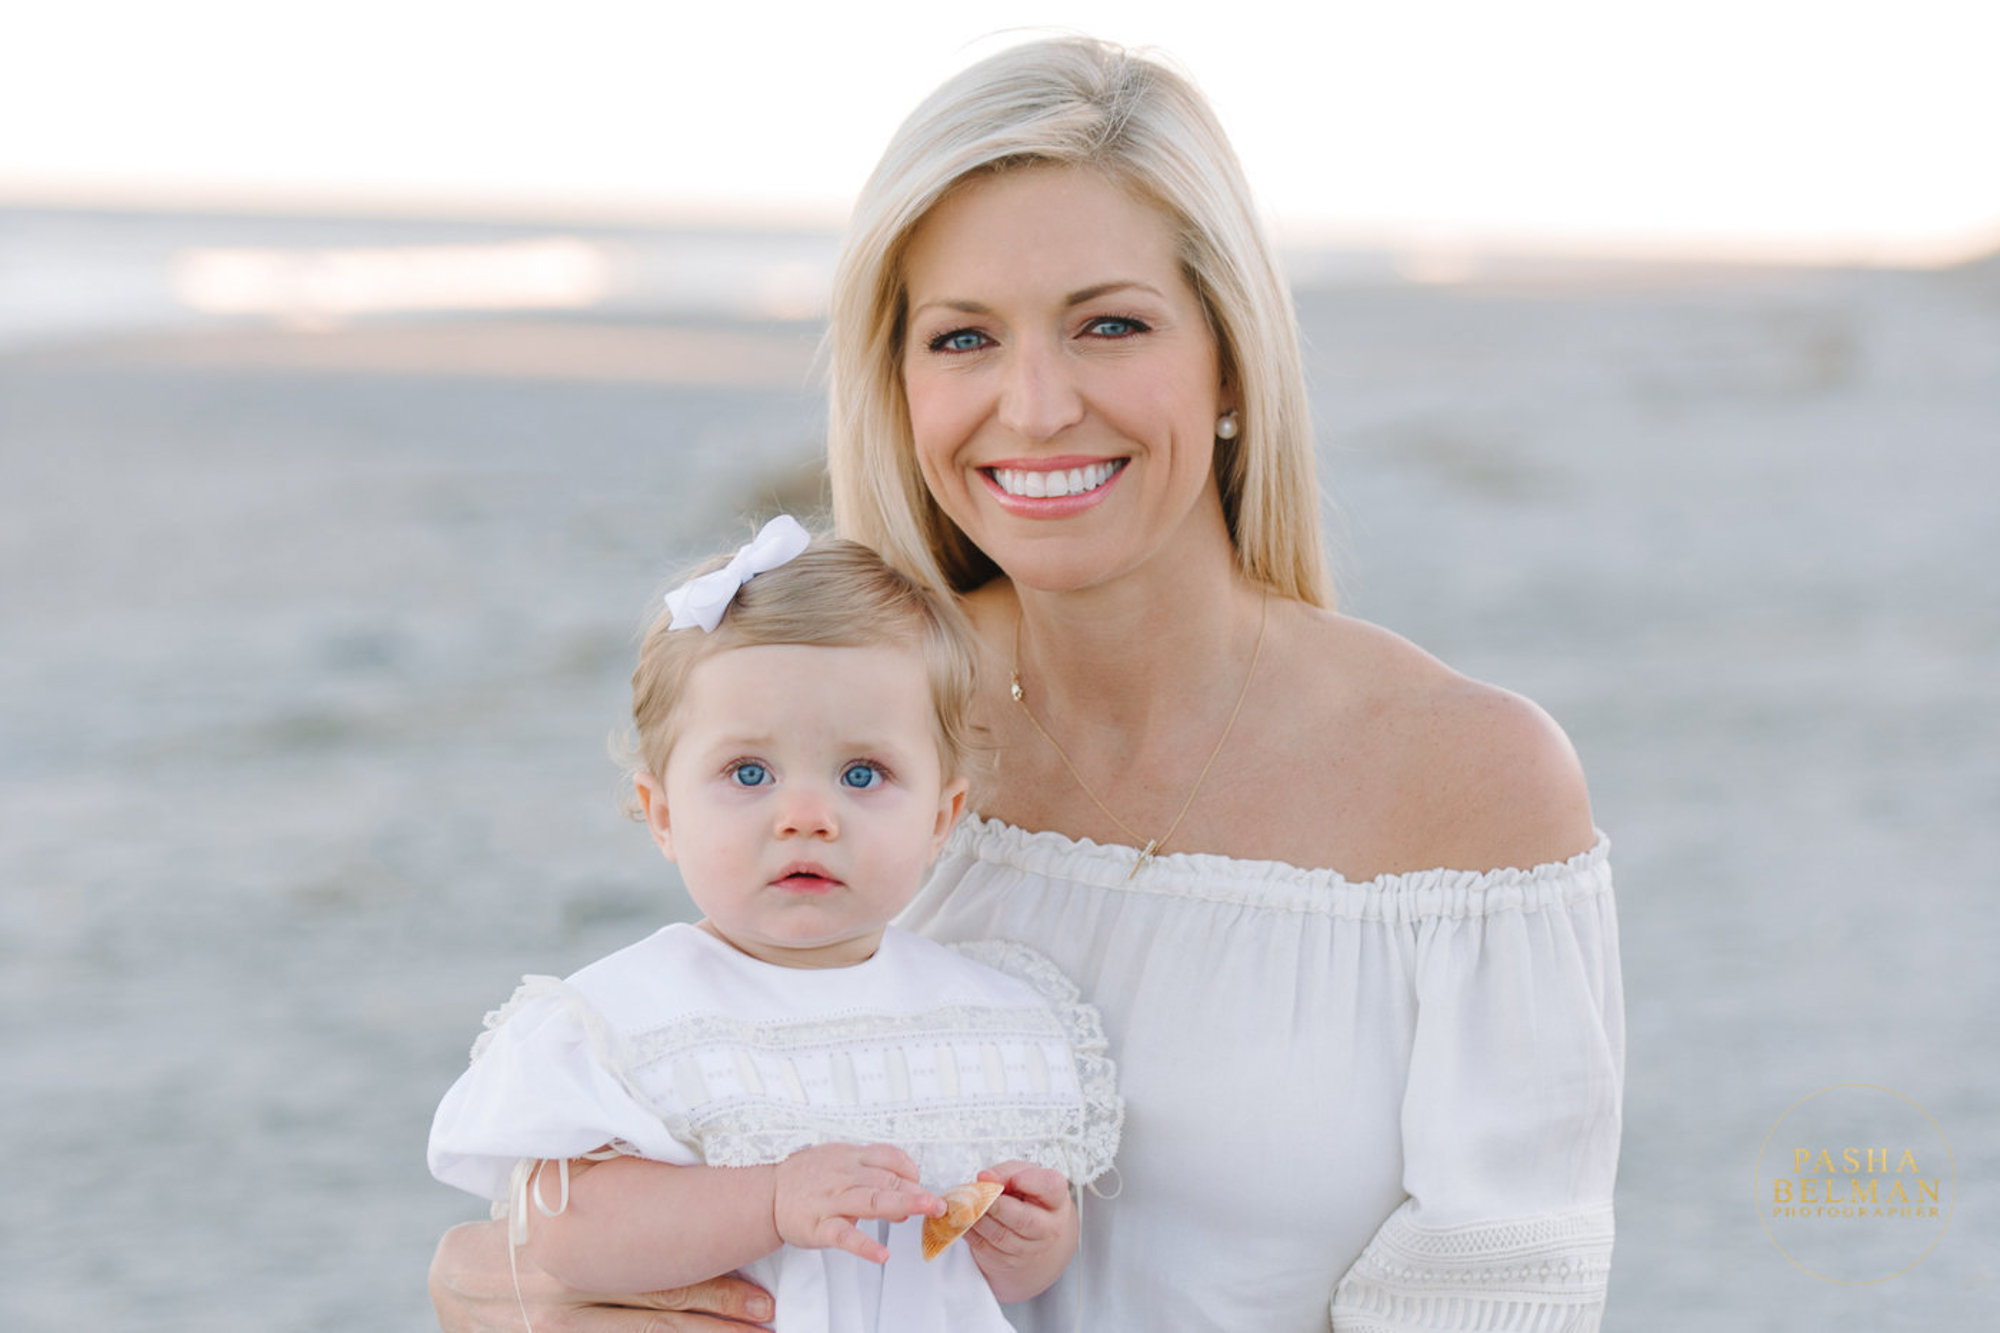 Myrtle Beach Family Photographer - Family Beach Portraits - Fox News Host Ainsley Earhardt